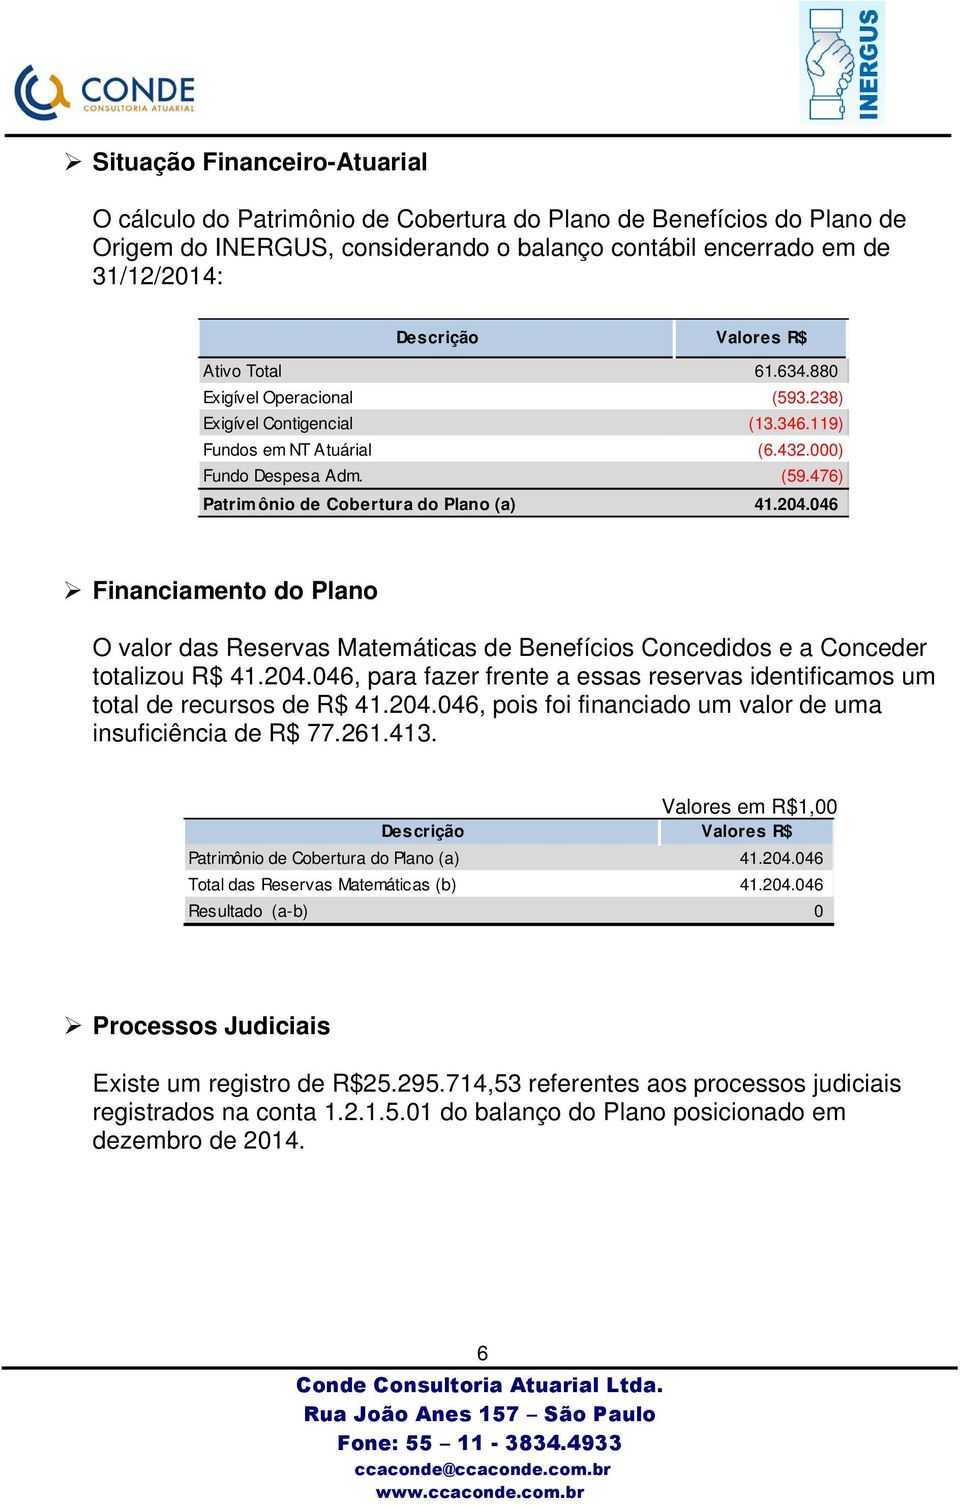 046 Financiamento do Plano O valor das Reservas Matemáticas de Benefícios Concedidos e a Conceder totalizou R$ 41.204.